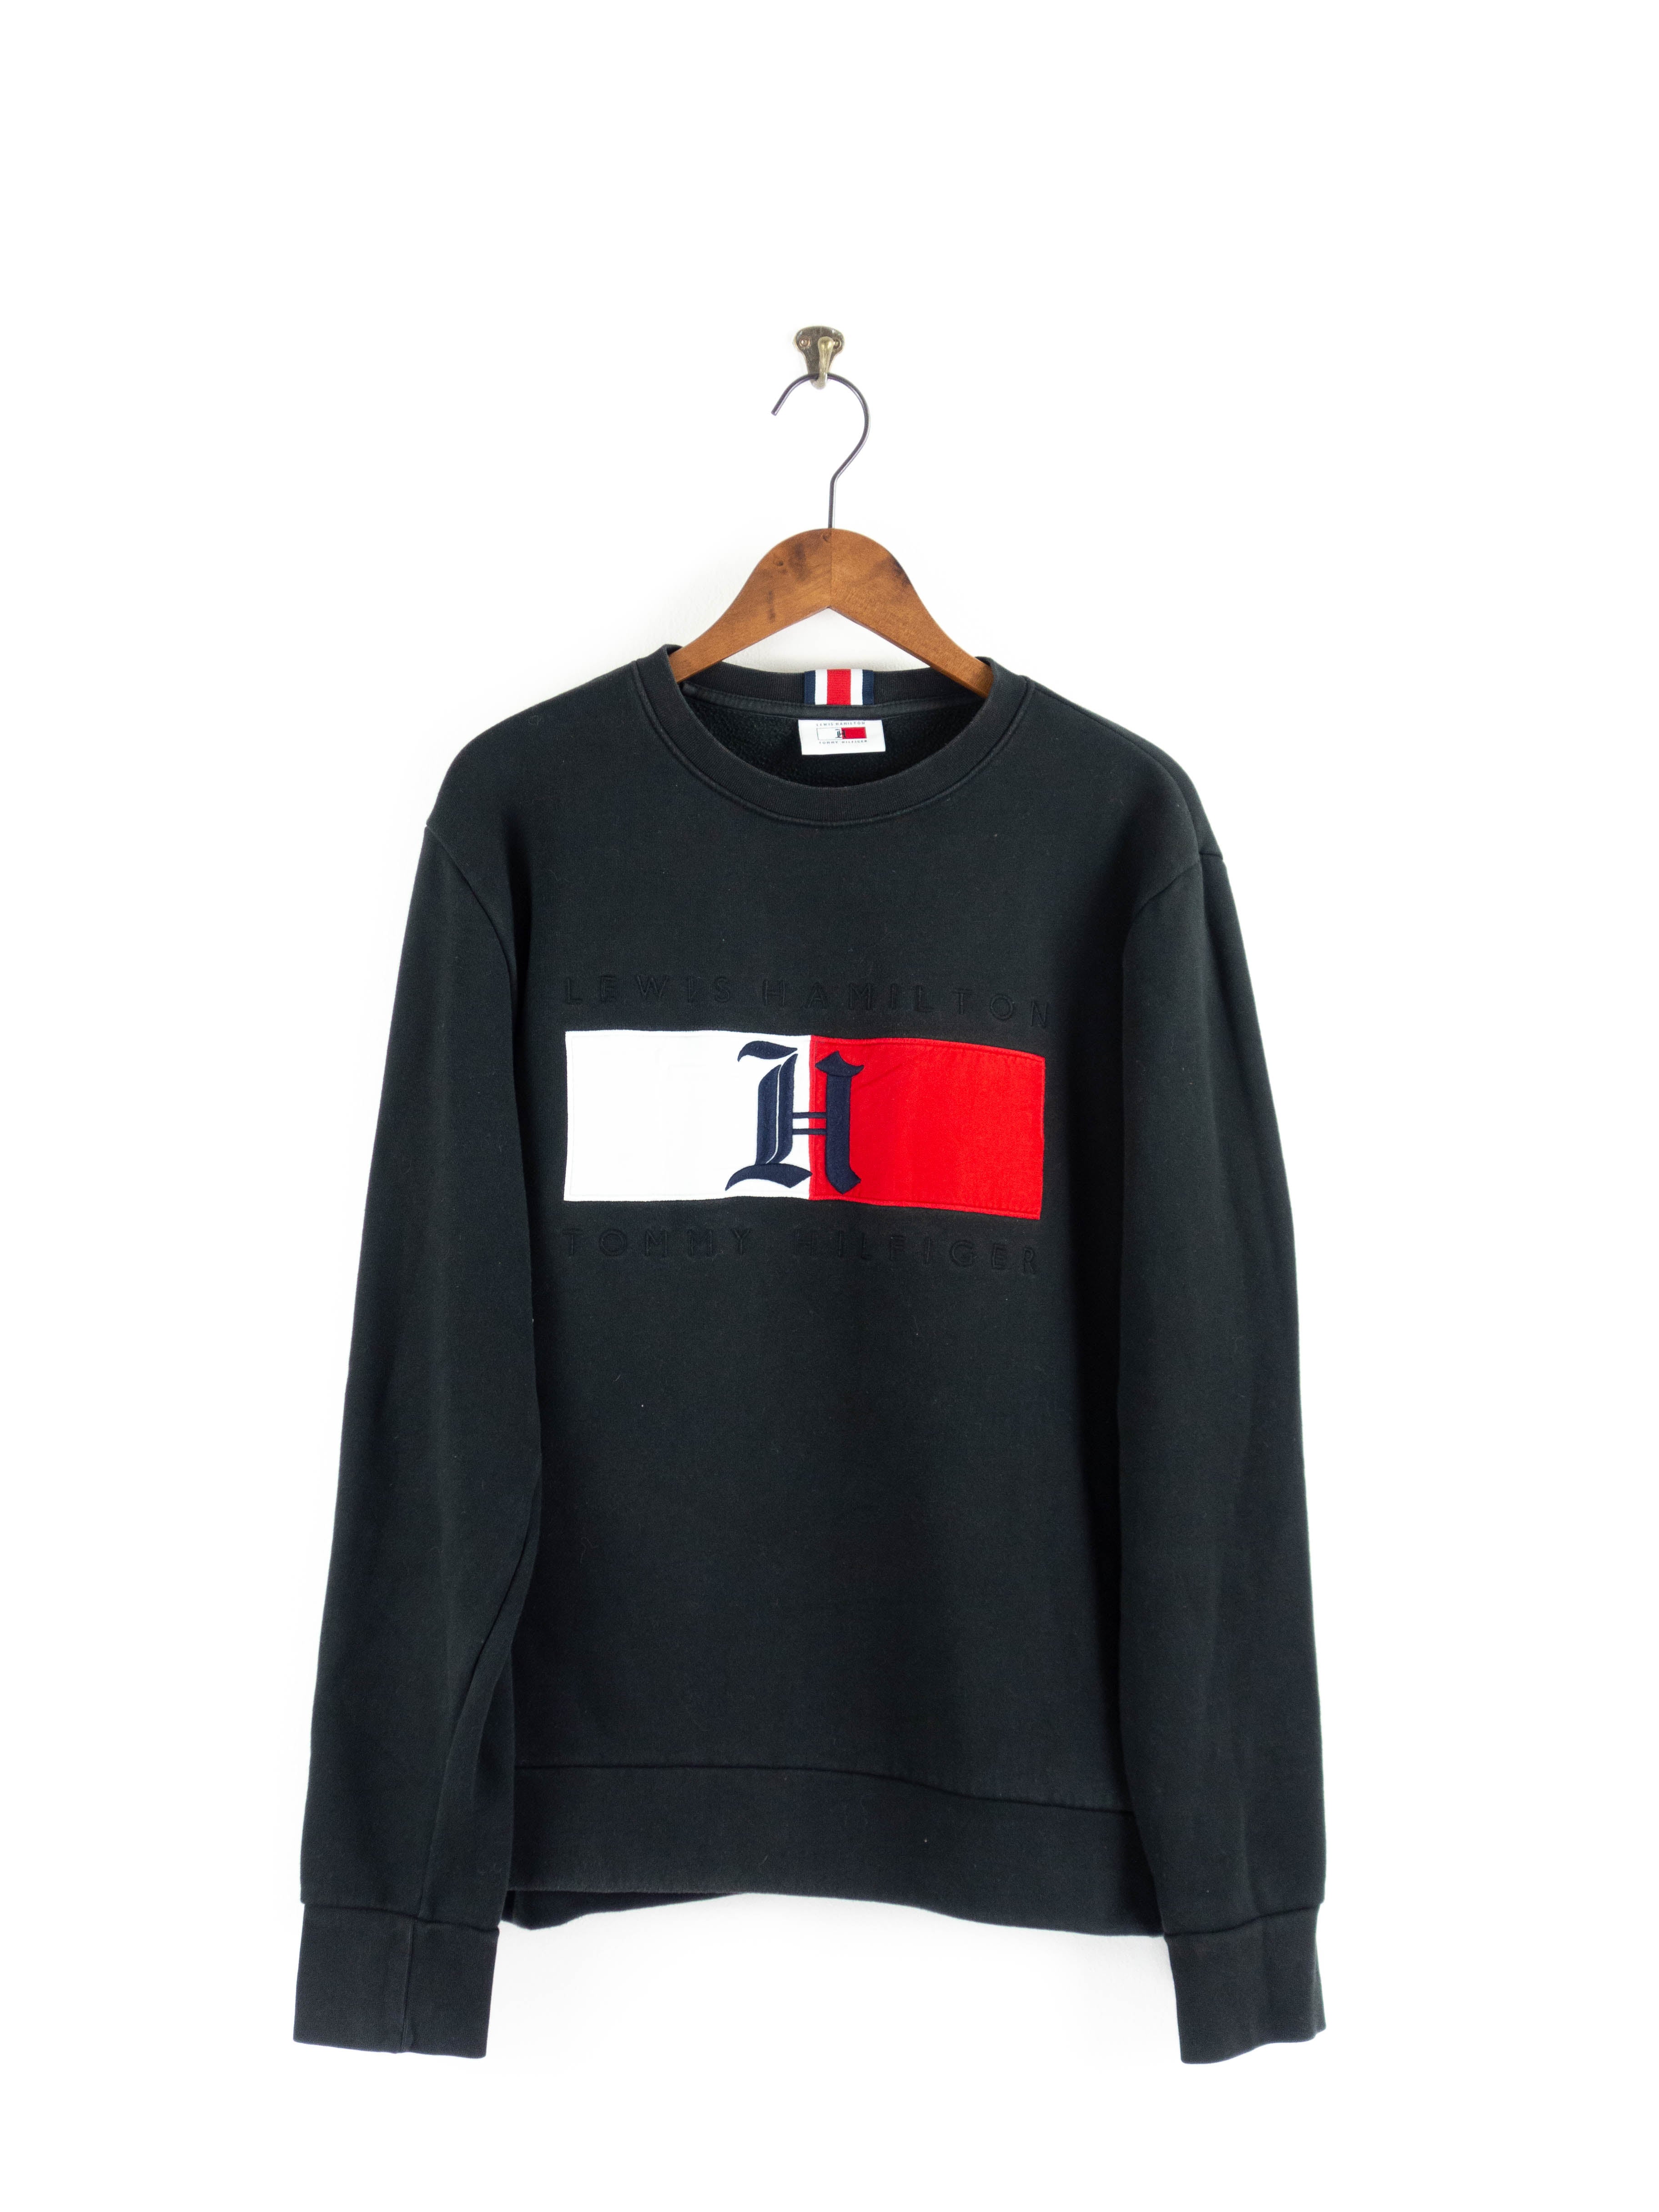 Lewis Hamilton Sweater XL